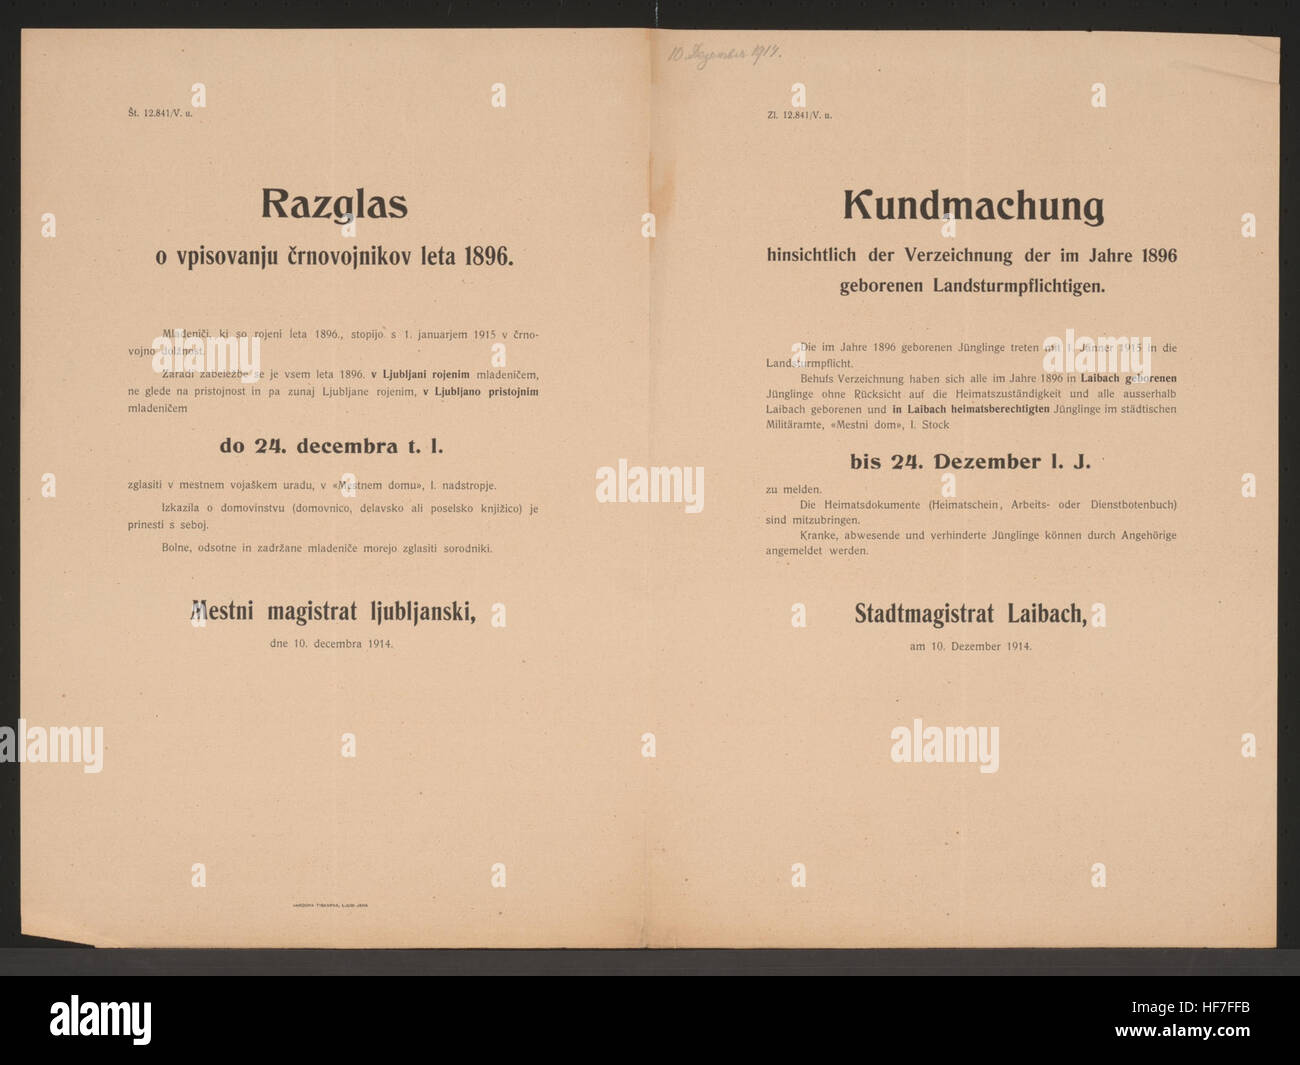 Die im Jahre 1896 geborenen Landsturmpflichtigen haben sich bis 24. Dezember zu melden - Mitzubringende Dokumente - Stadtmagistrat Laibach, am 10. Dezember 1914 - Zl. 12.841/V. u. Verzeichnung der Landsturmpflichtigen - Kundmachung - Laibach - Mehrsprachiges Plakat 1914 Stock Photo